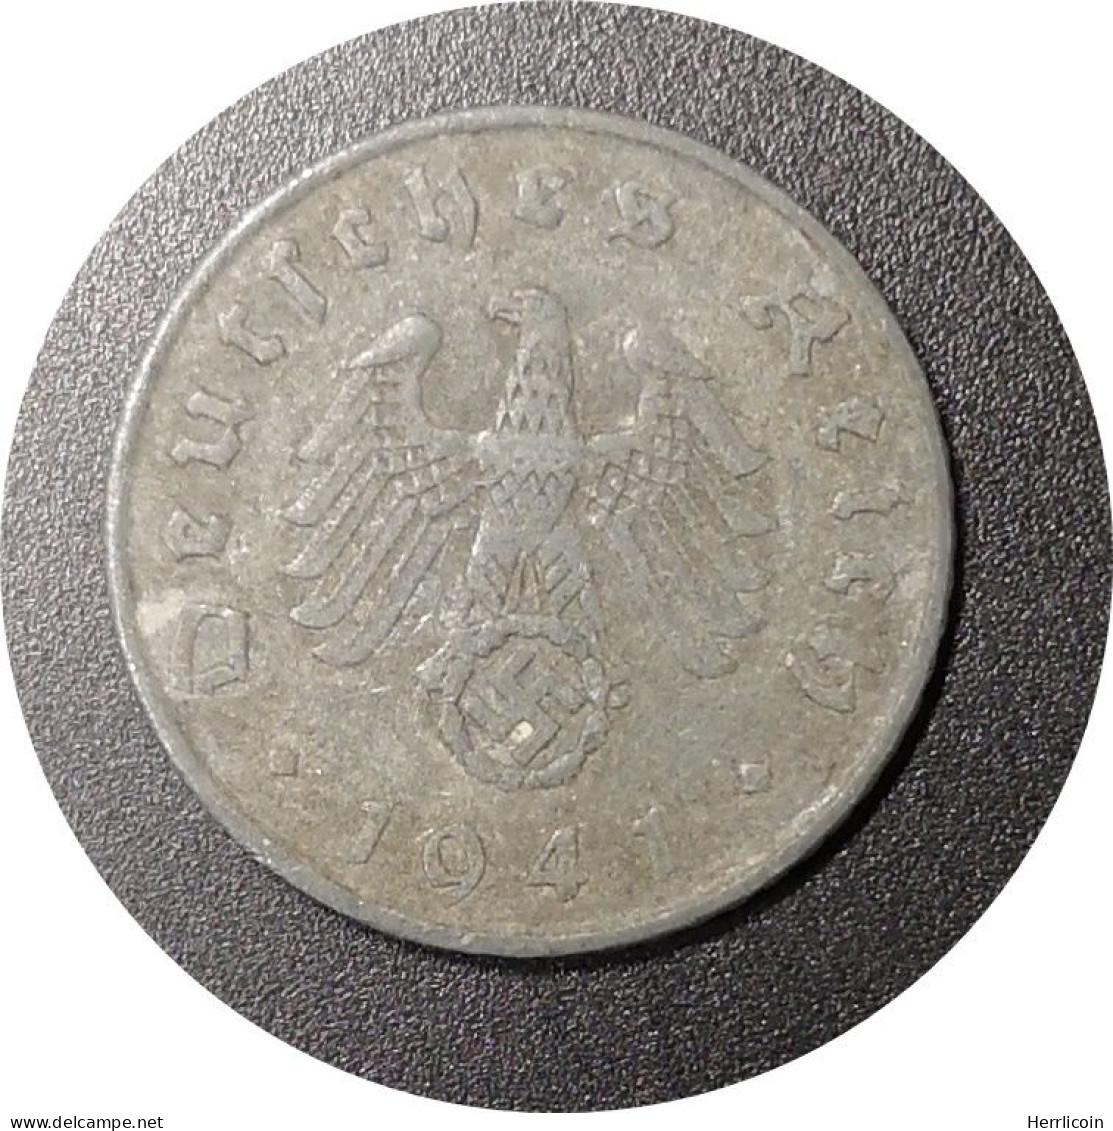 Monnaie Allemagne - 1941 A - 5 Reichspfennig - 5 Reichspfennig